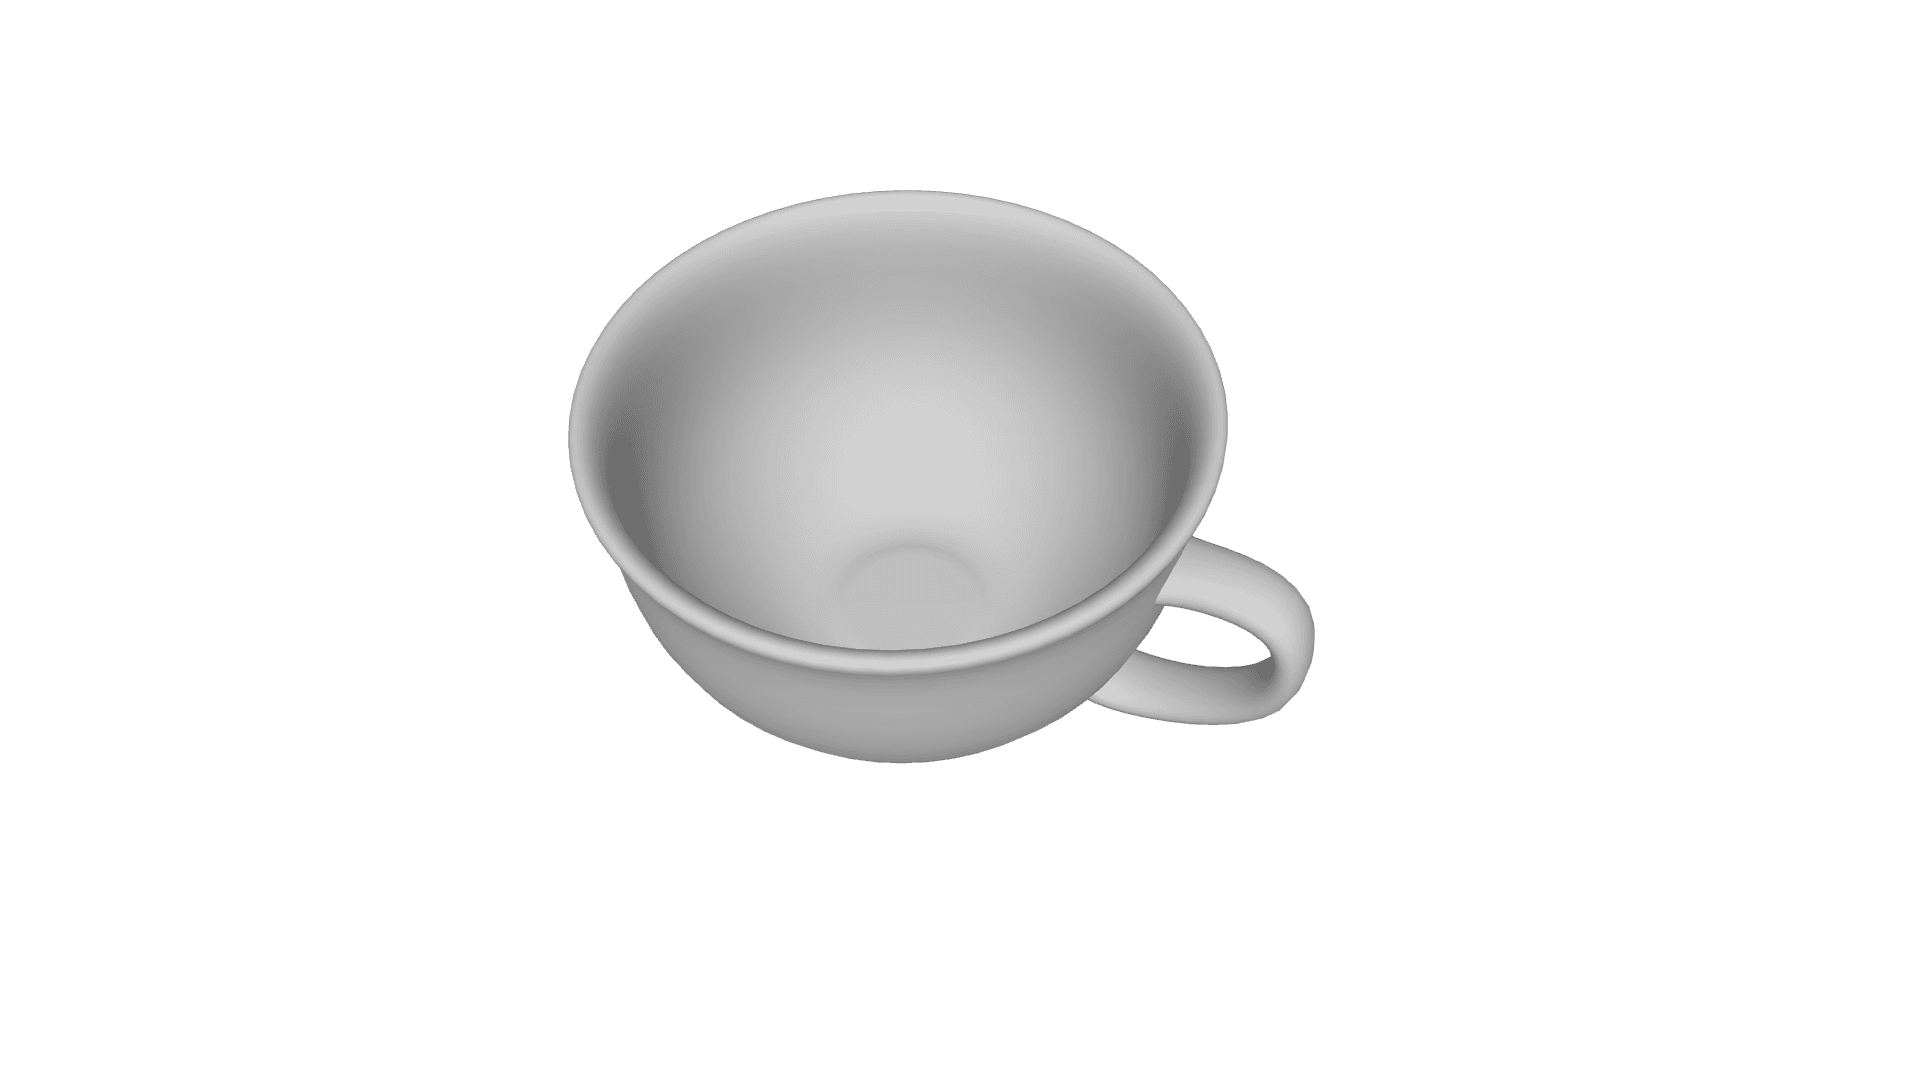 Tea Cup 3d model